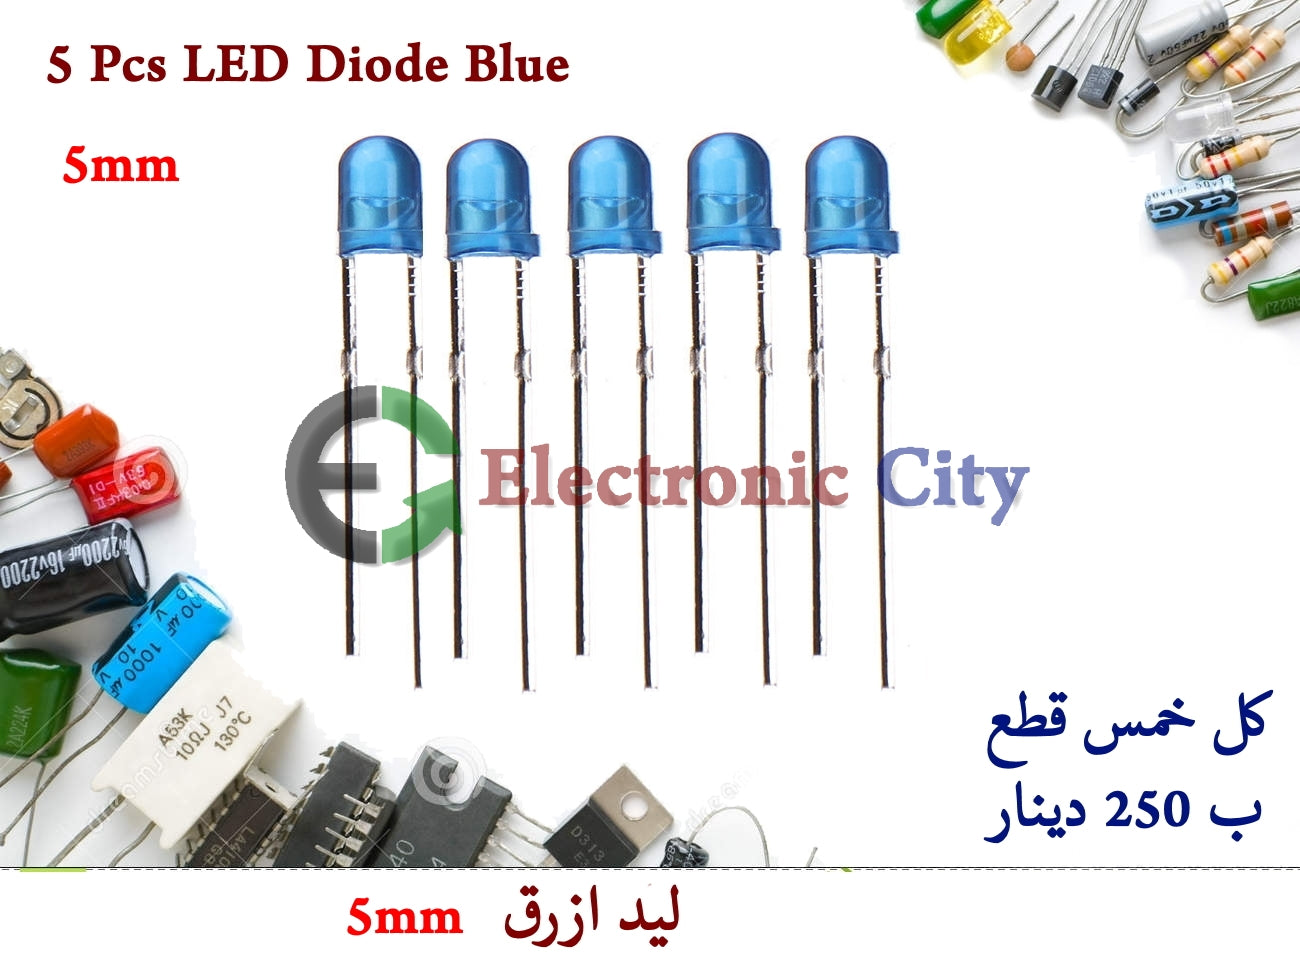 5 Pcs LED Diode Blue 5mm